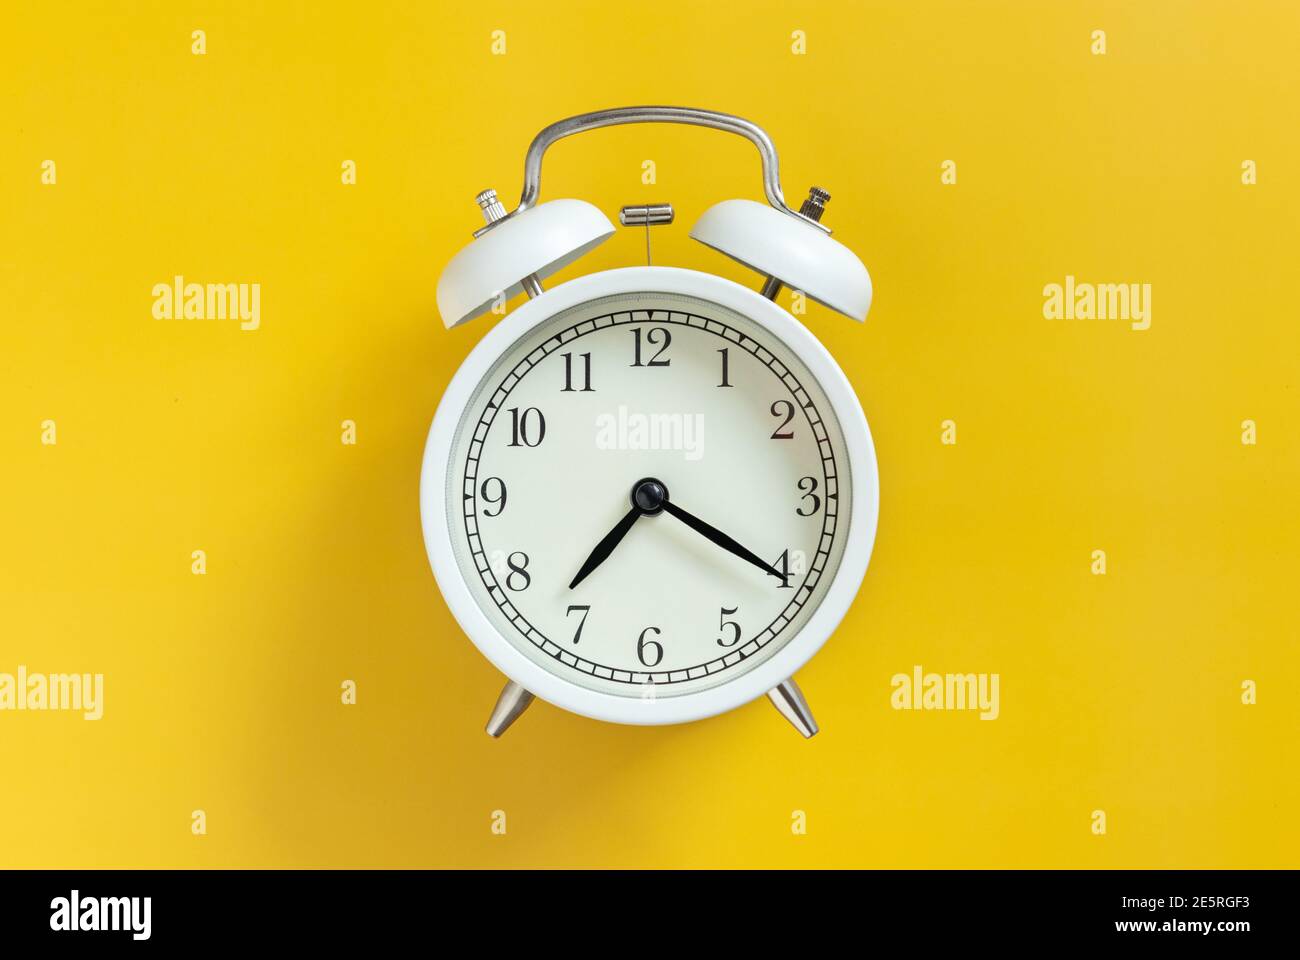 réveil analogique classique rétro à cercle blanc avec aiguille d'horloge isolée sur fond jaune vide avec espace de copie. concept de gestion du temps. Banque D'Images